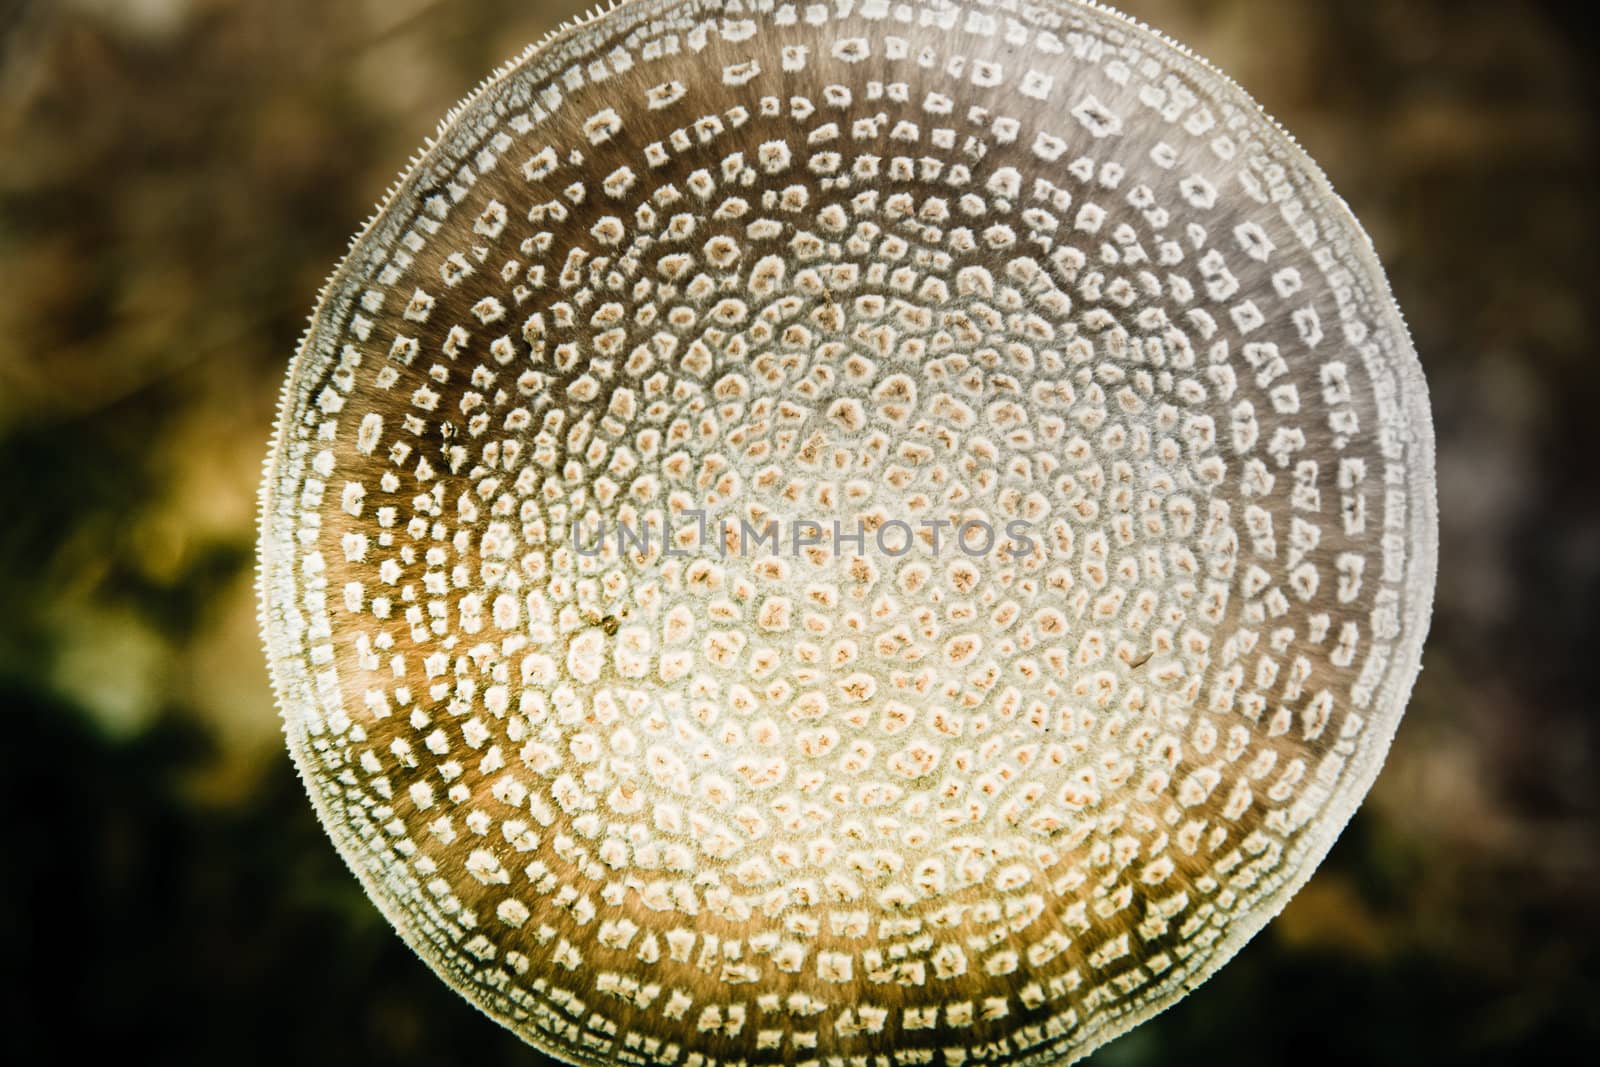 Fungi by anobis